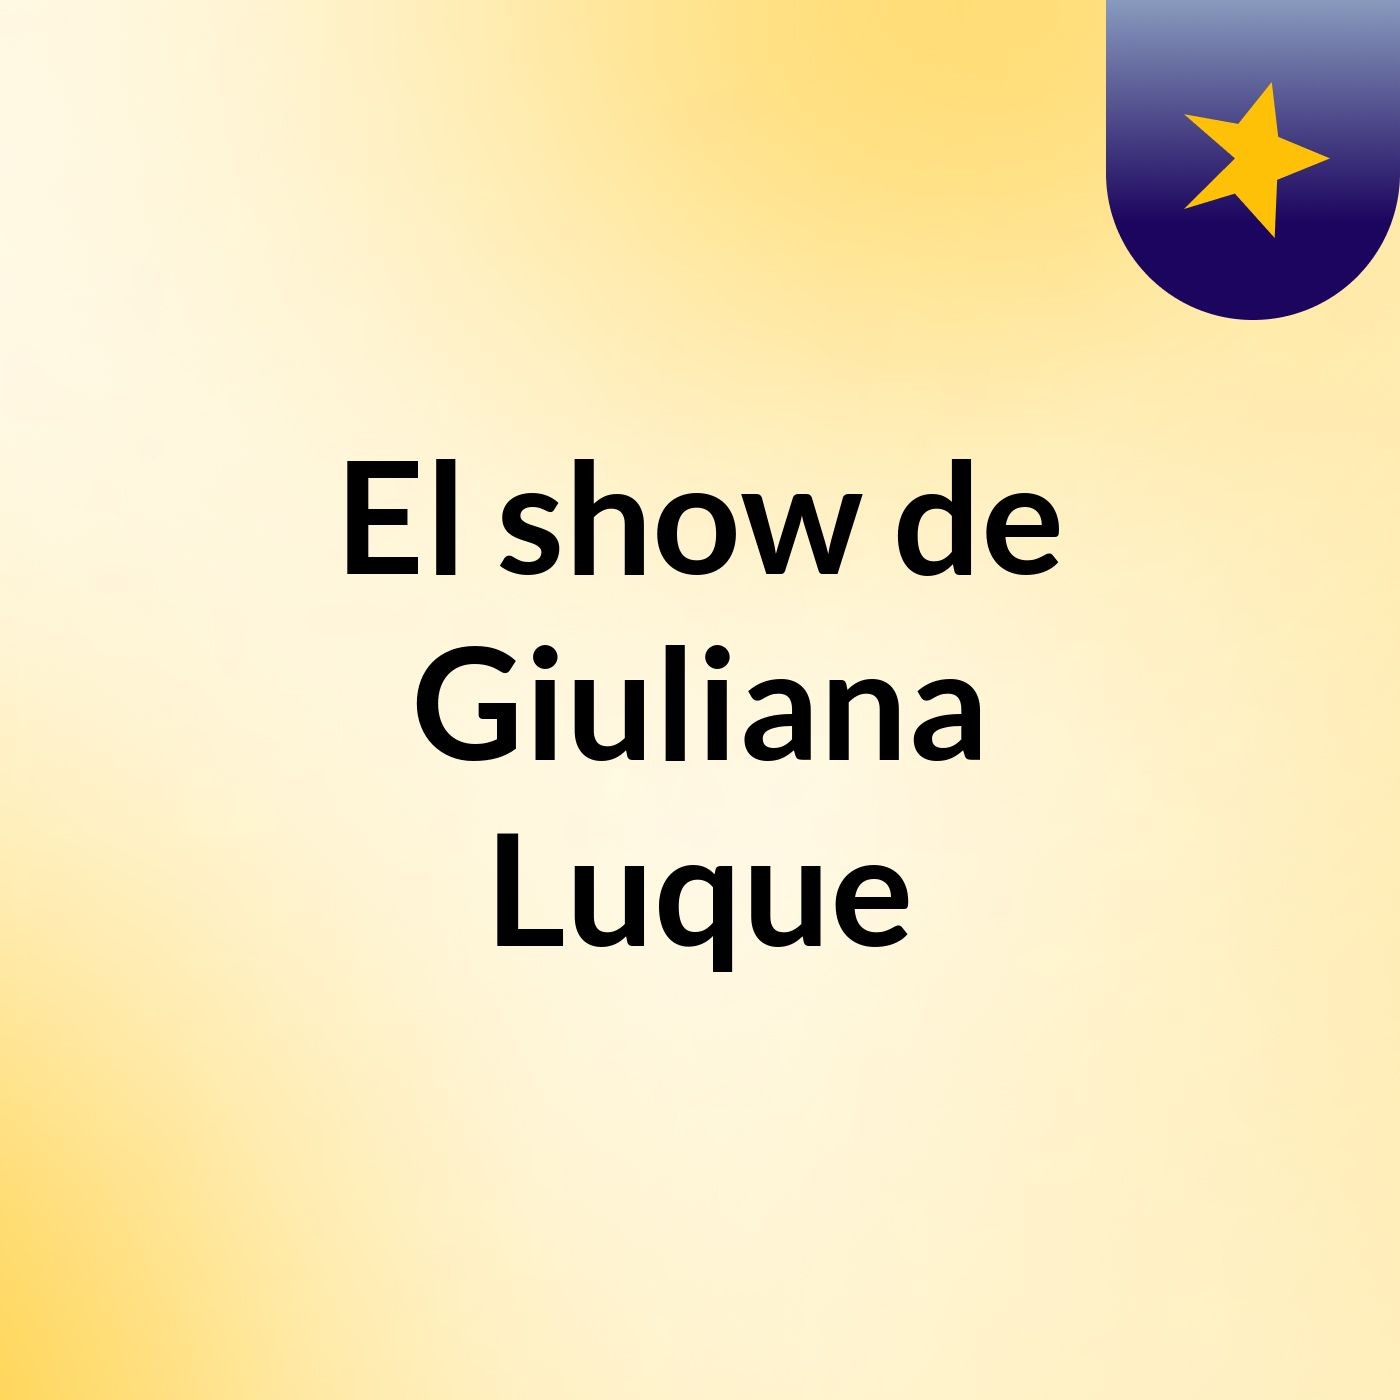 El show de Giuliana Luque